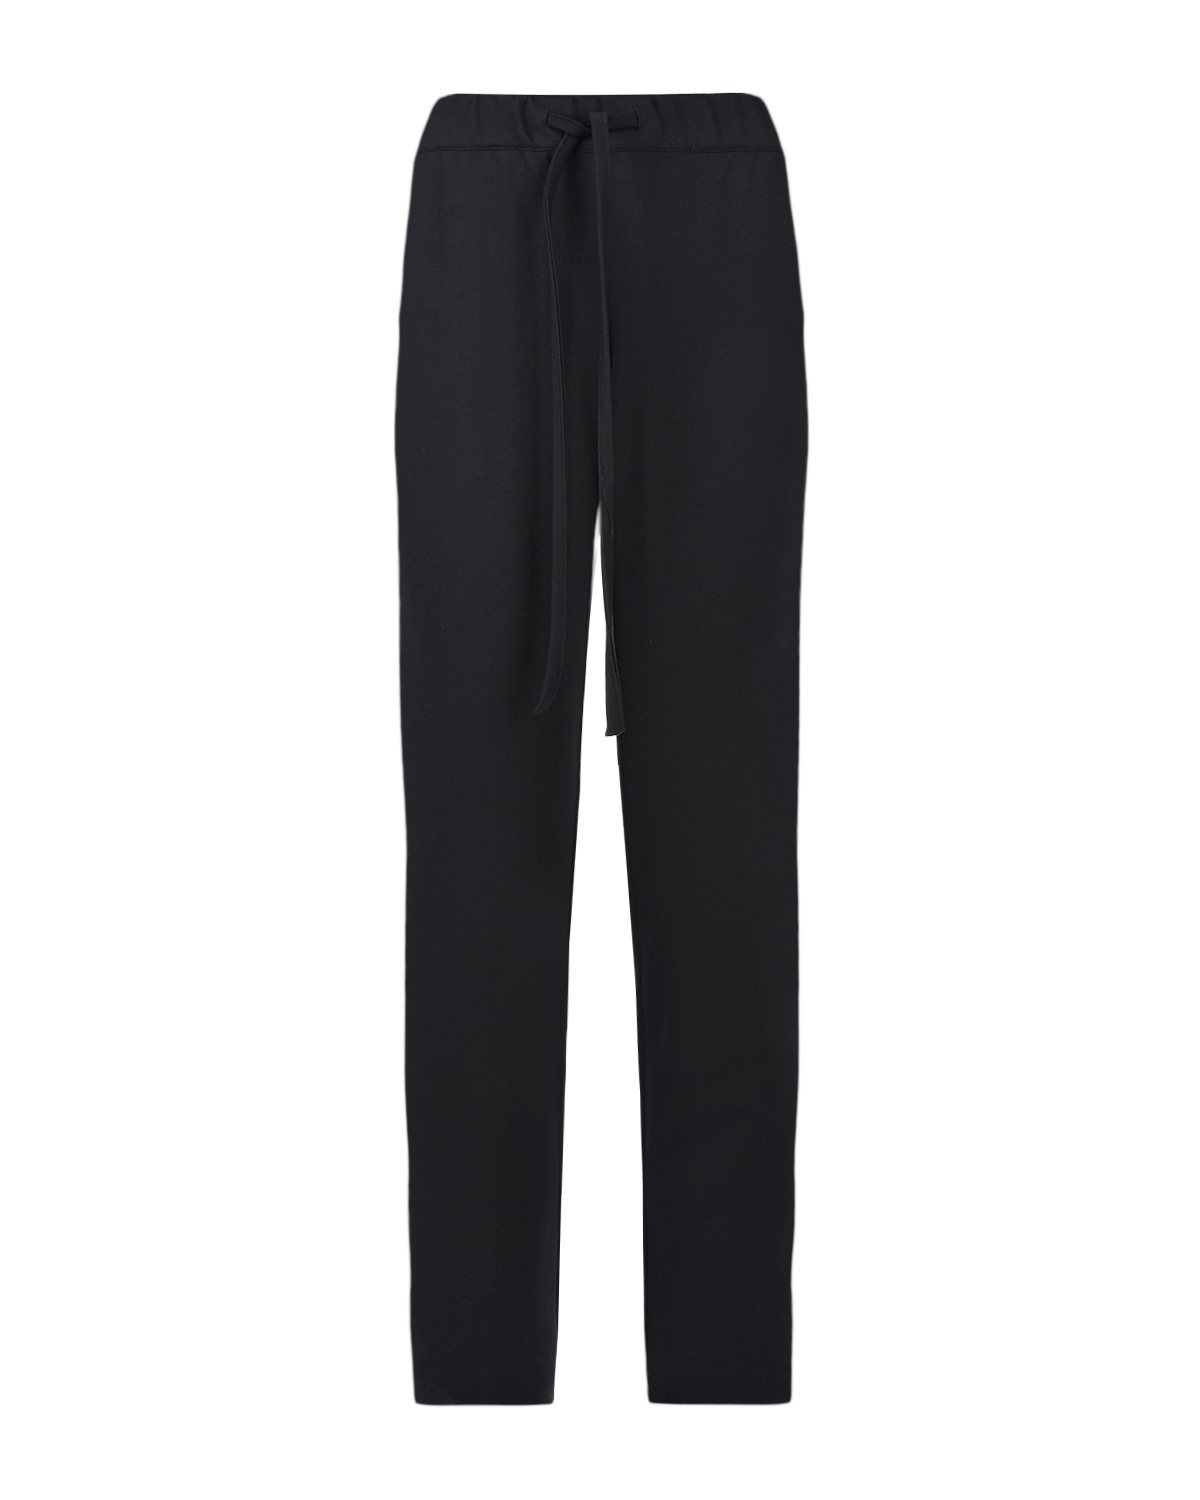 Черные брюки для беременных Dan Maralex, размер 40, цвет черный